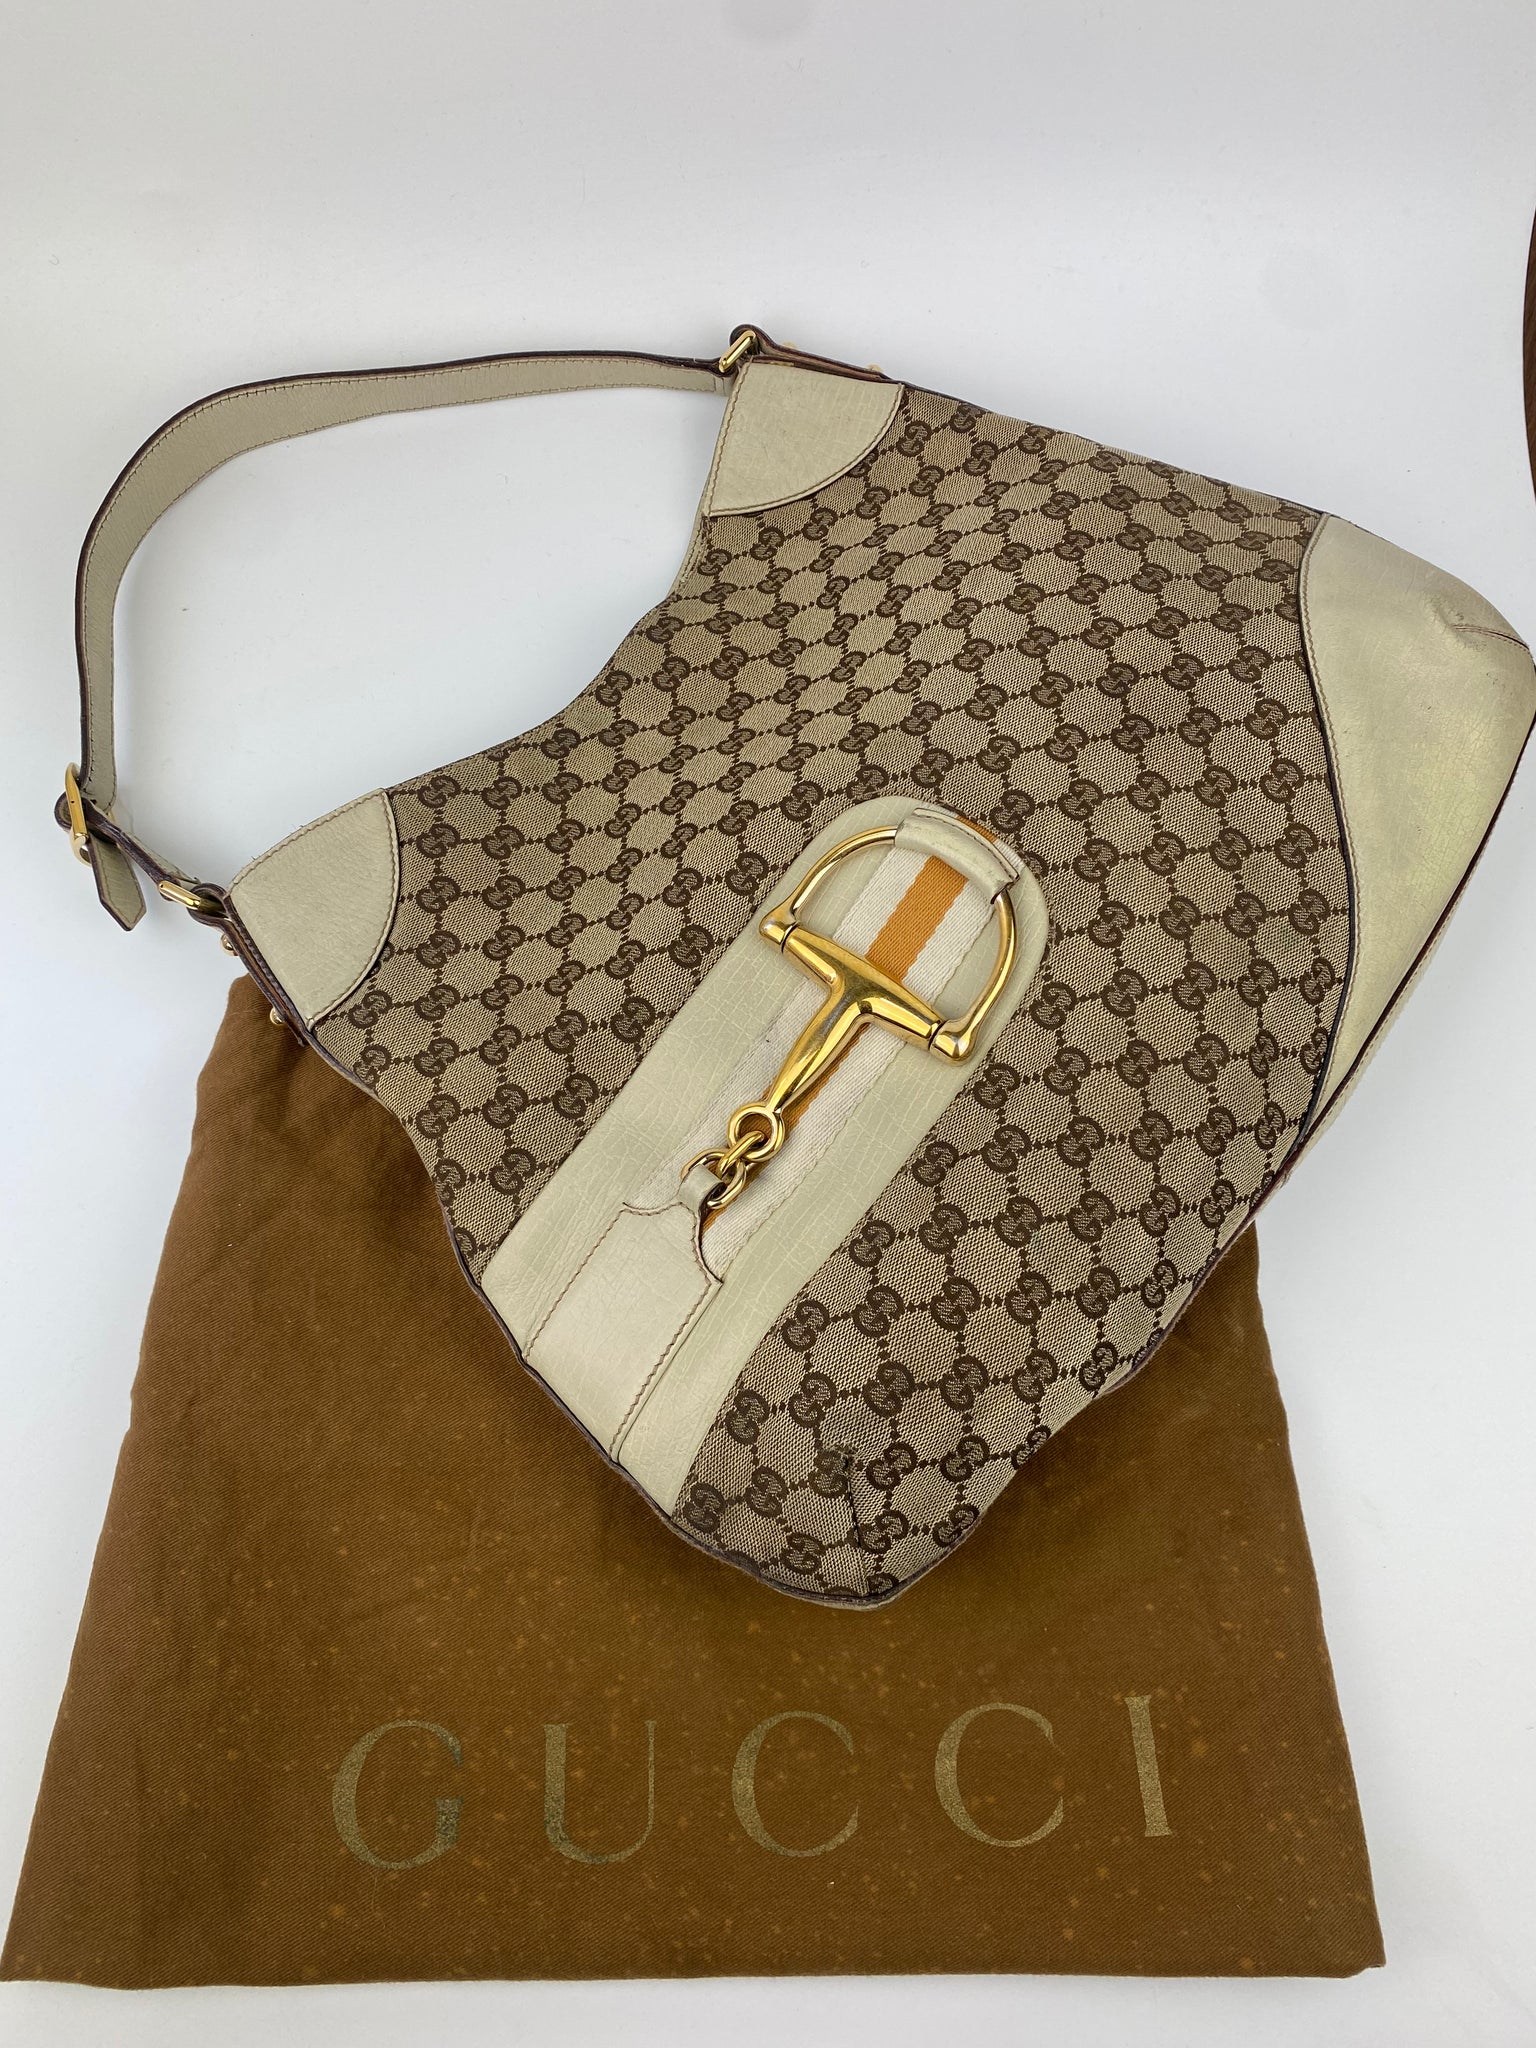 Loading  Bags, Gucci purses, Gucci handbags